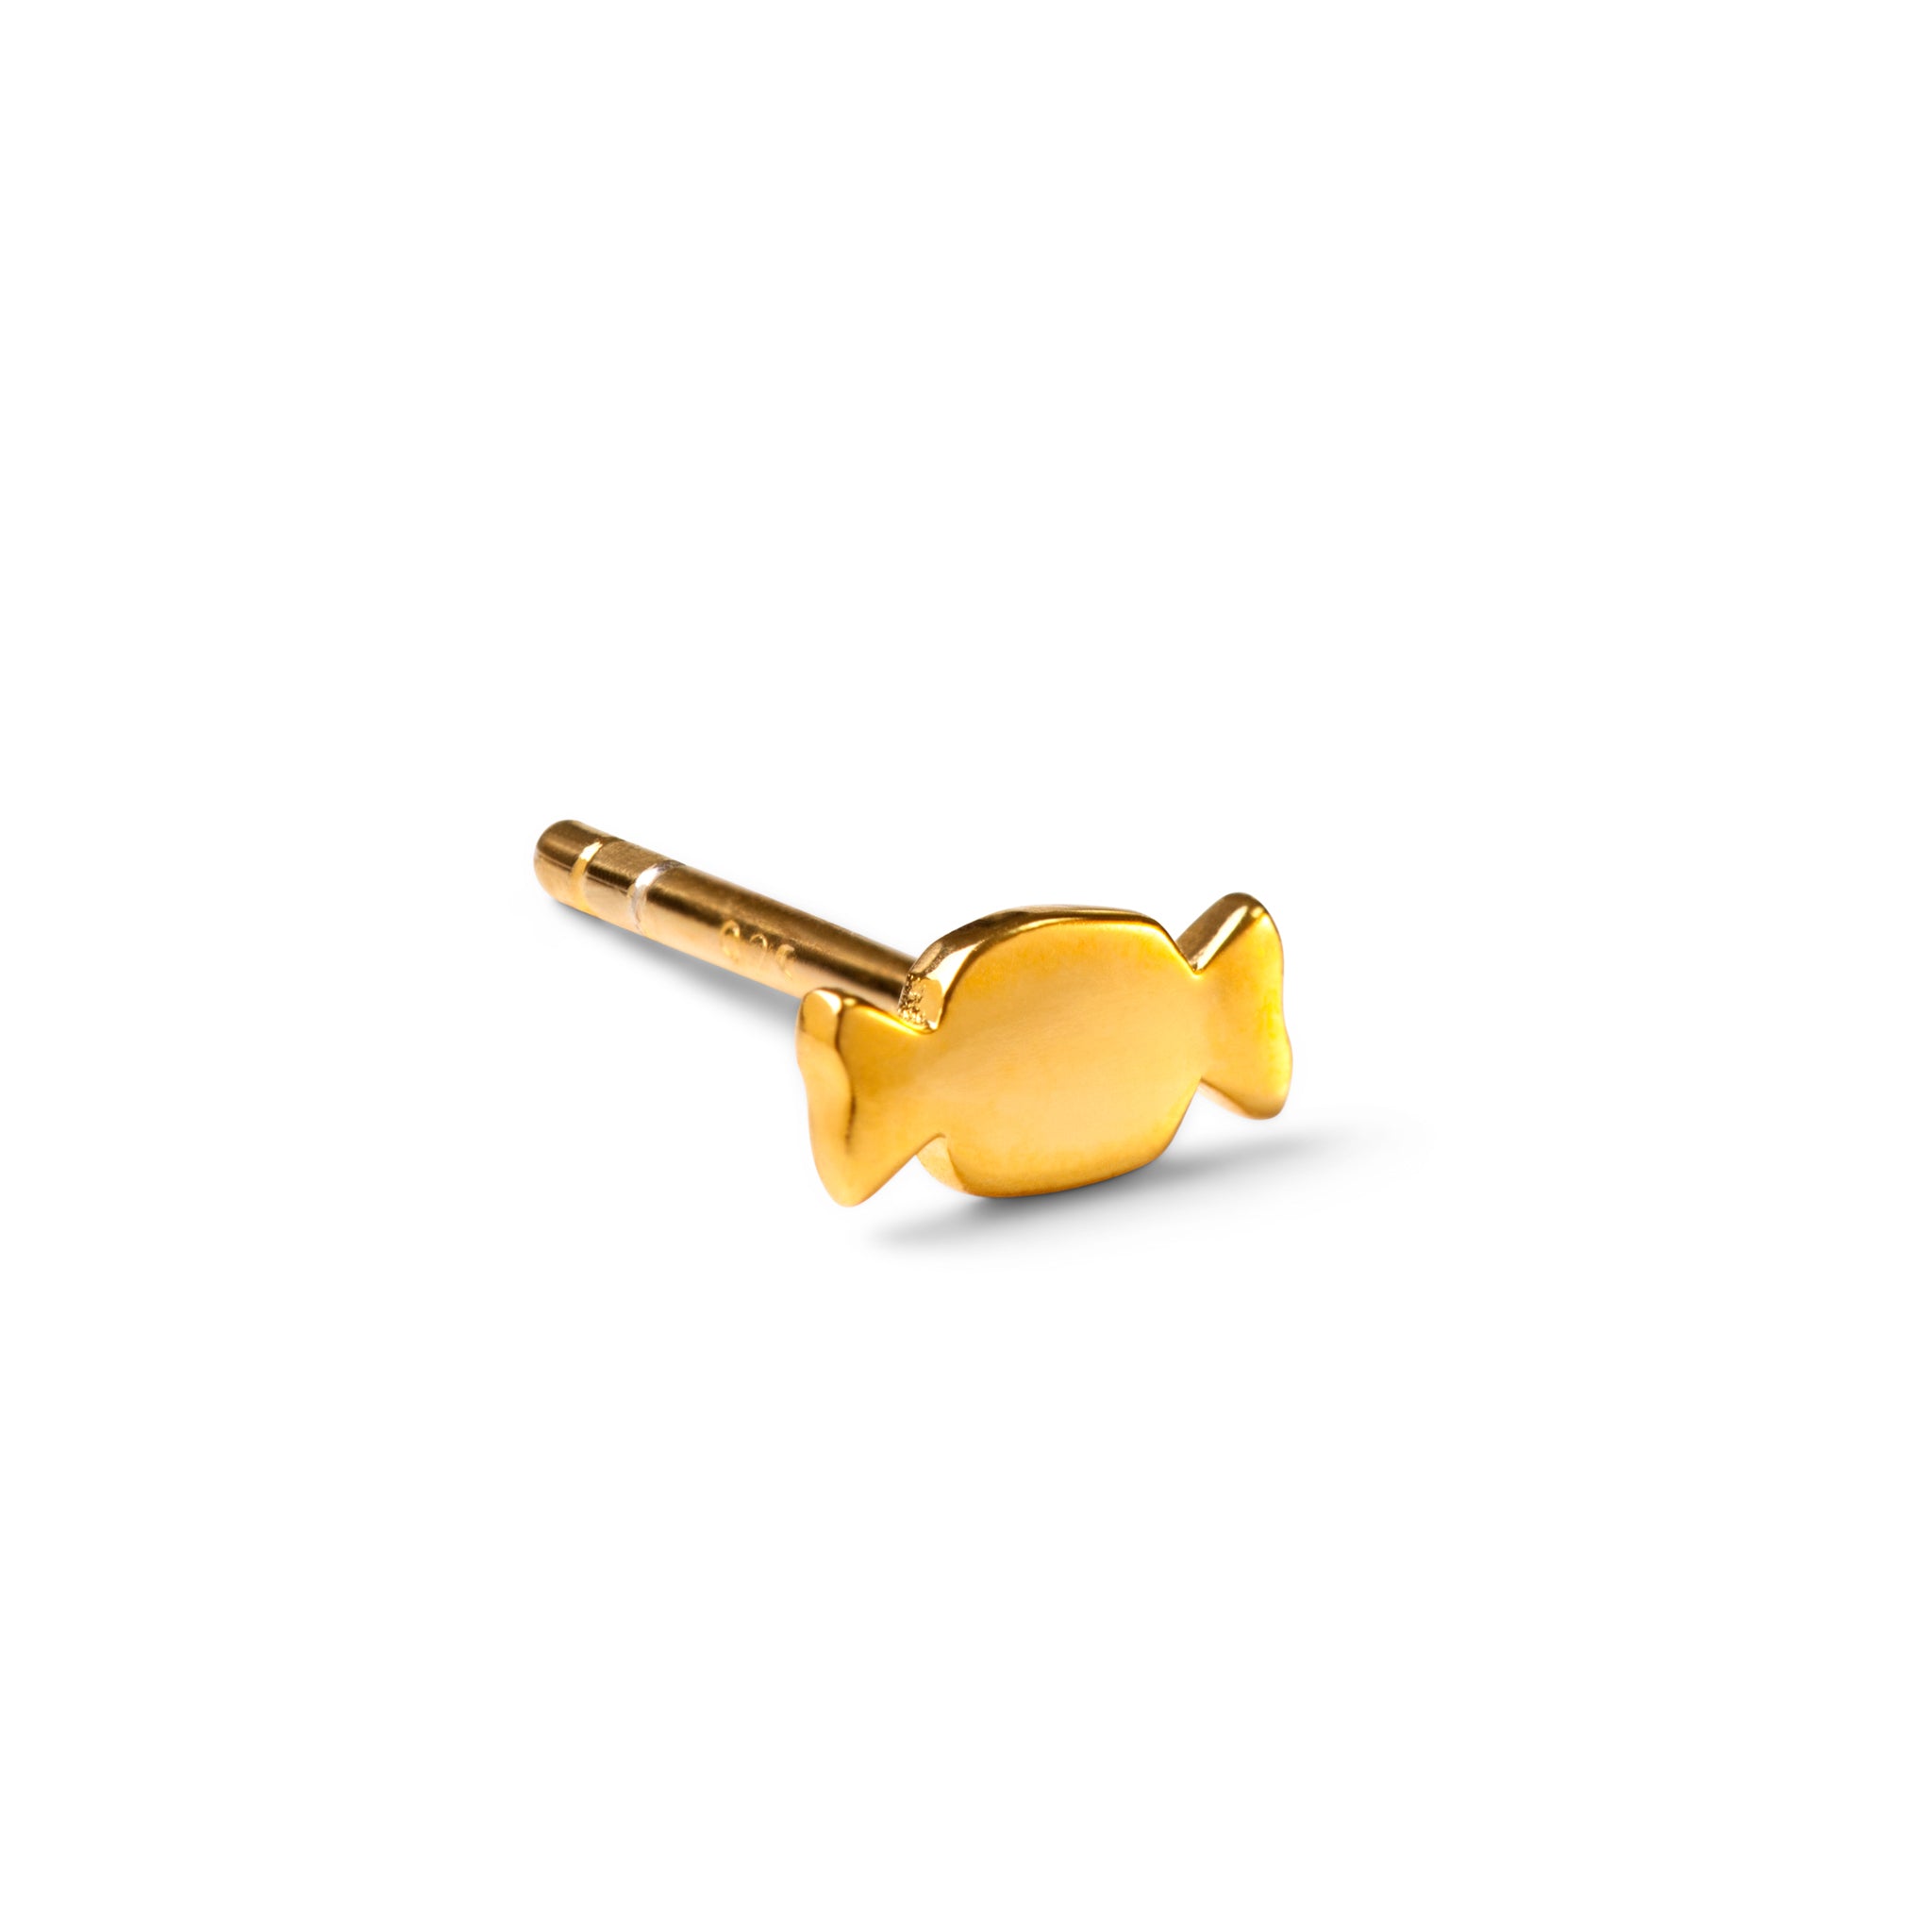 A BonBon Single Stud - Gold plated earring by Lulu Copenhagen.